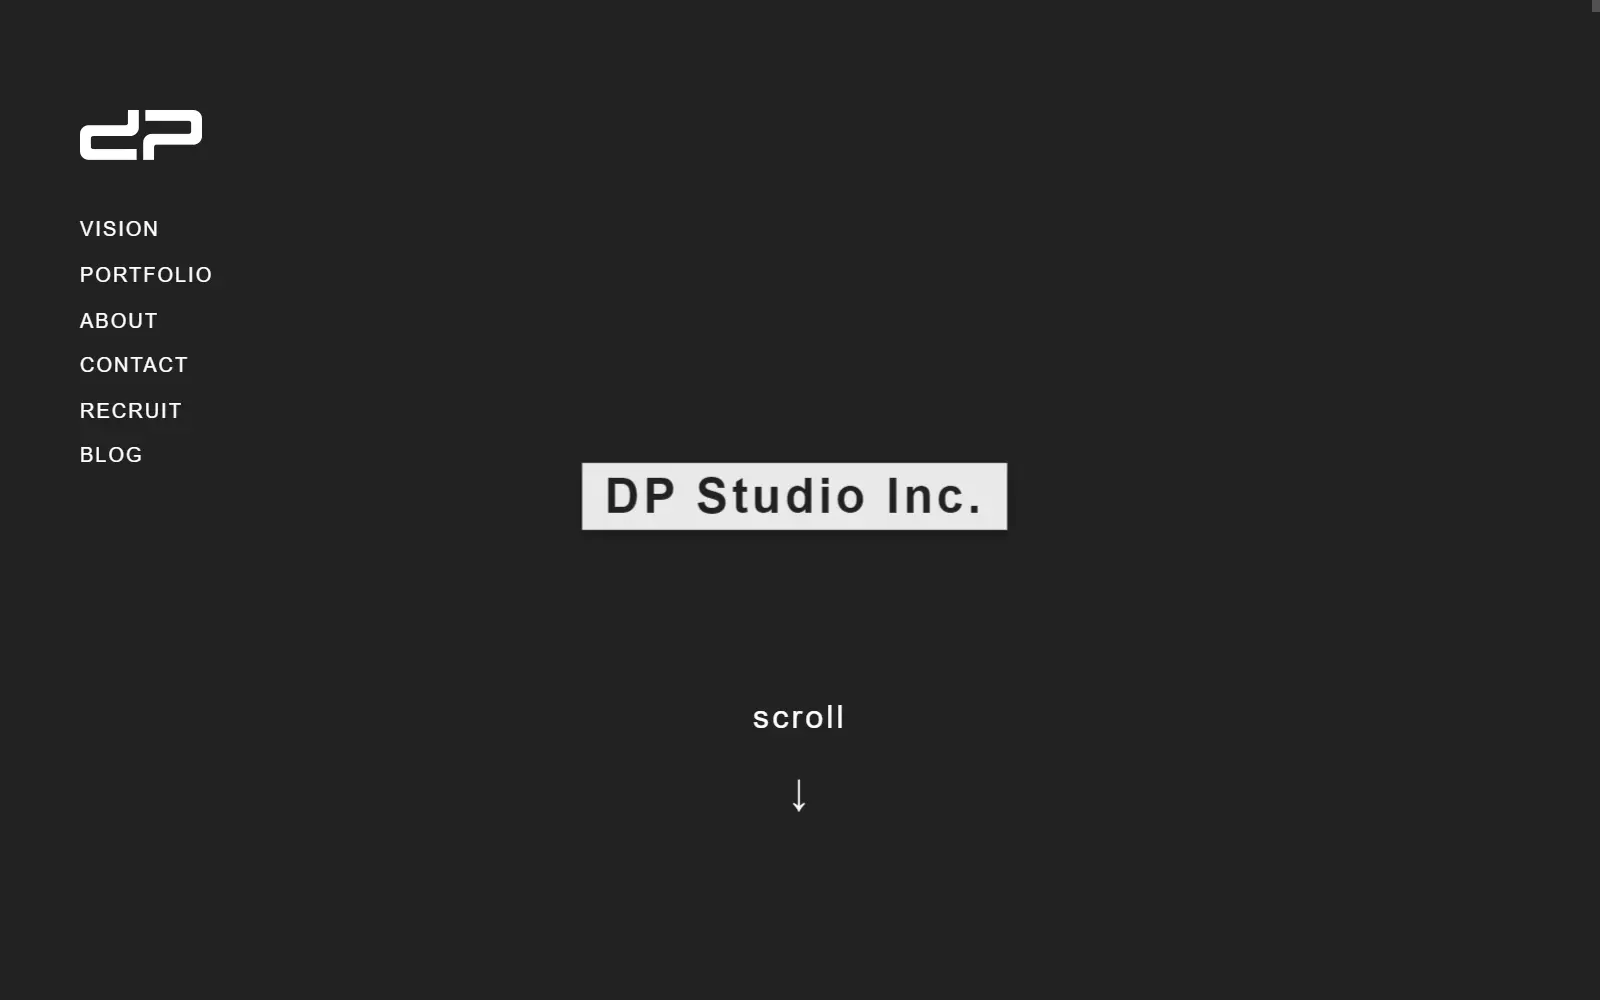 DP Studio株式会社